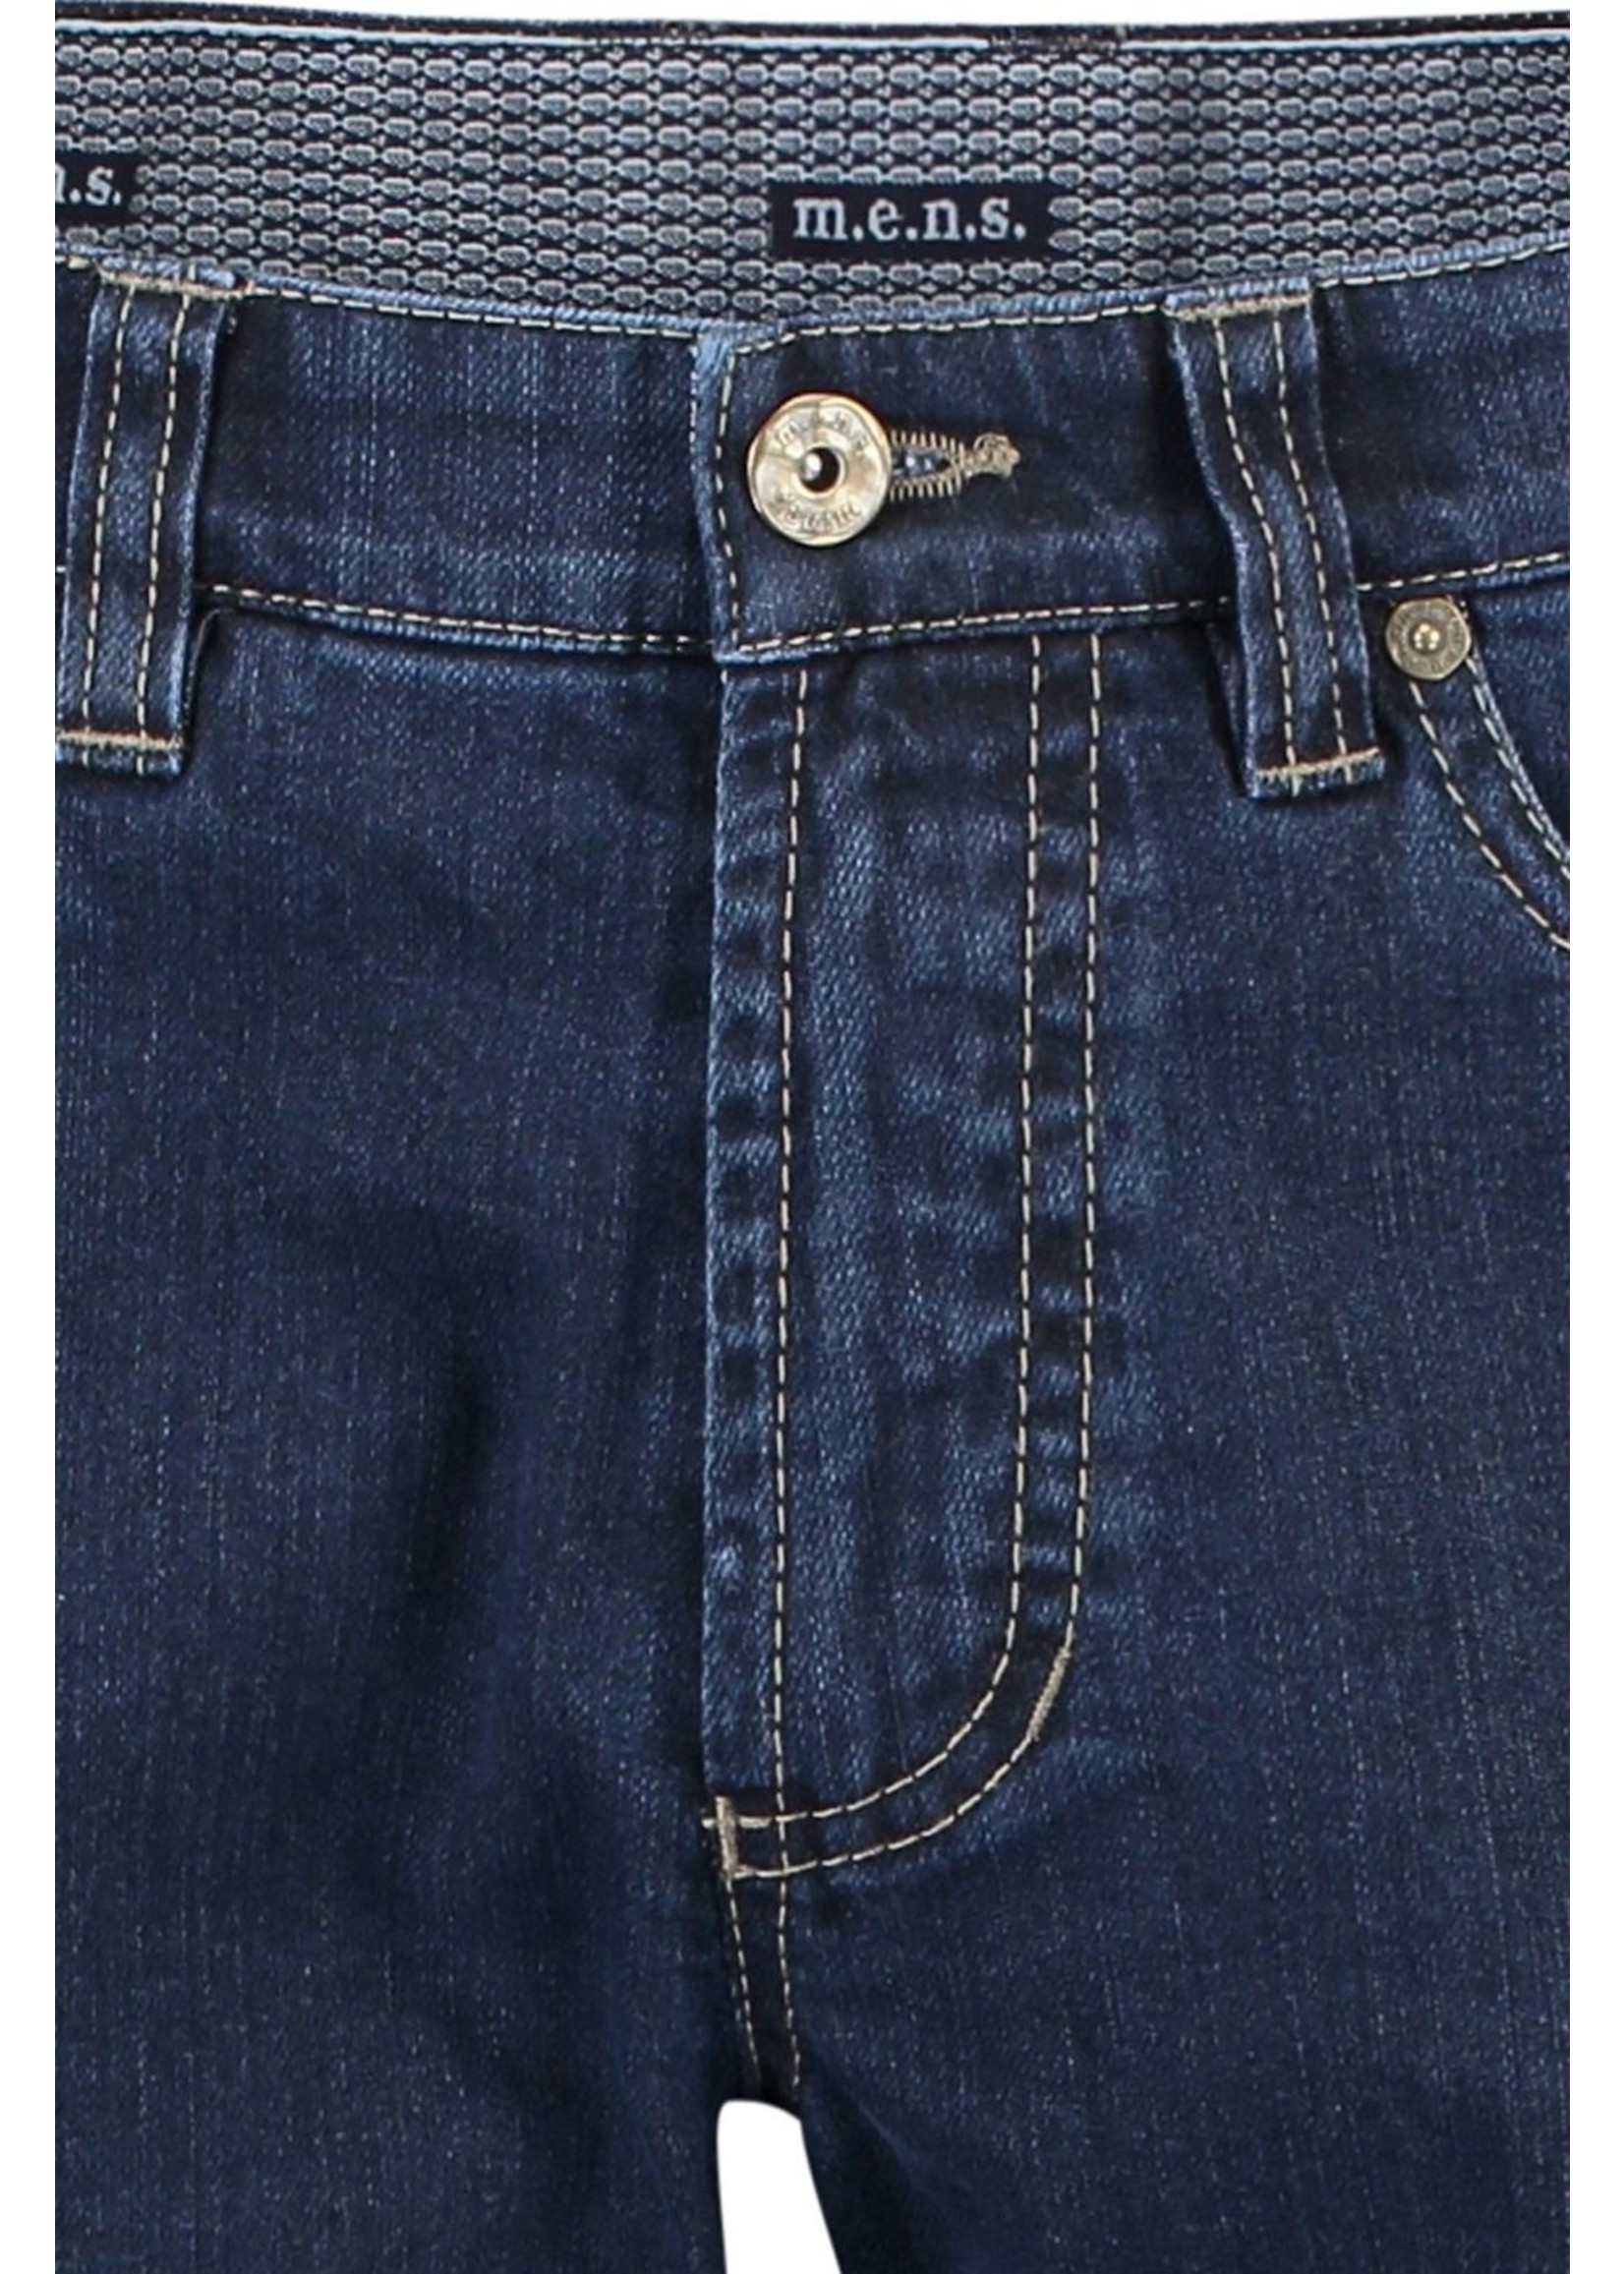 M.E.N.S. Jeans extensible à cinq poches style Detroit-5550